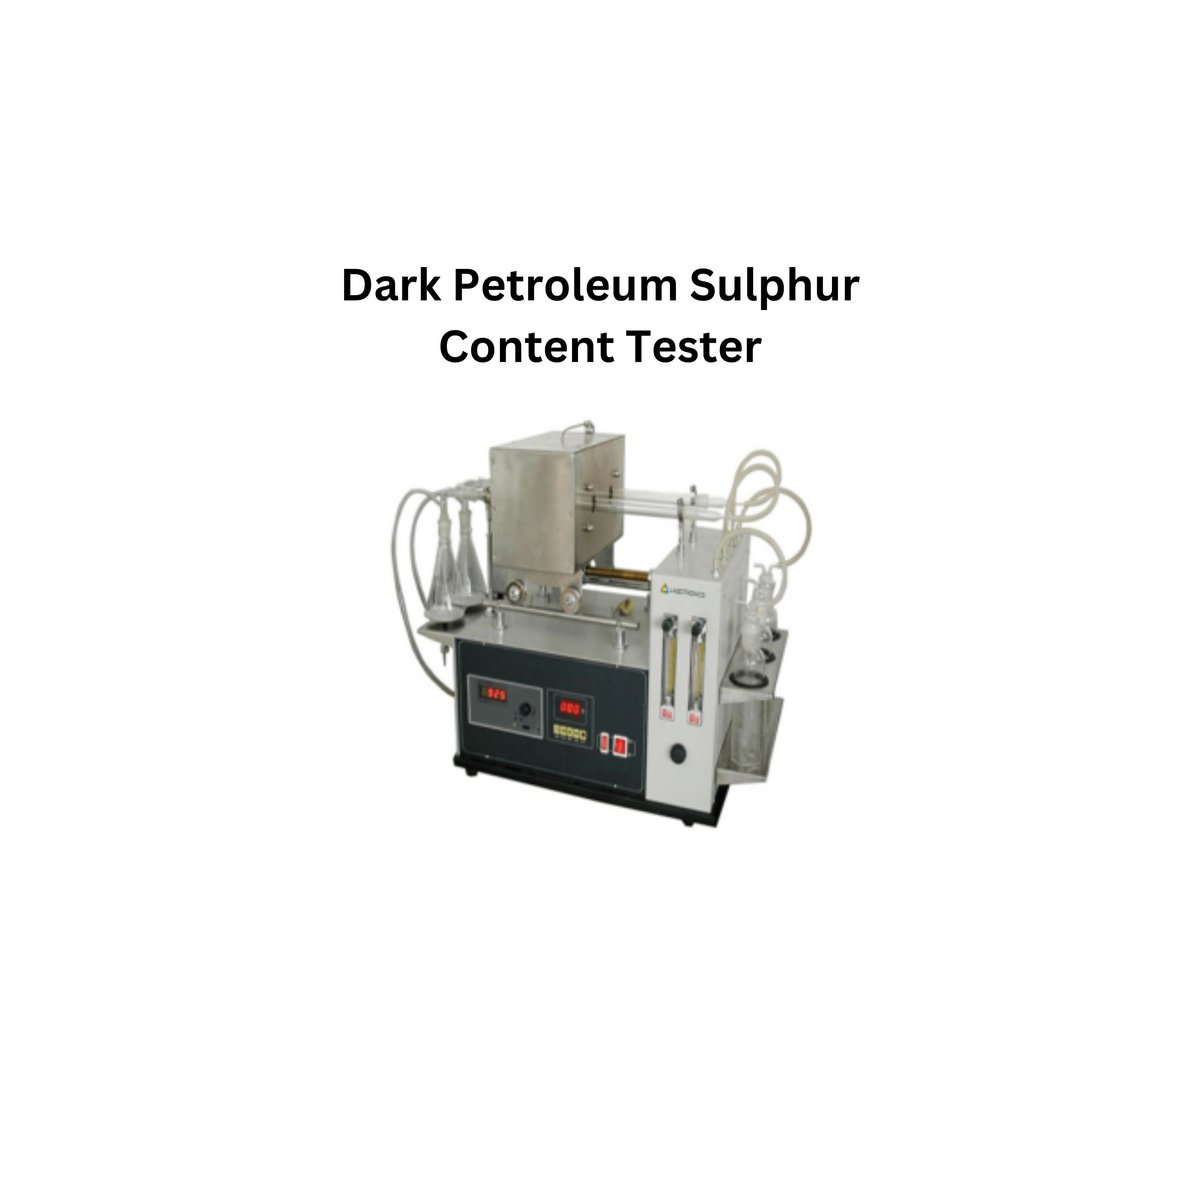 Dark Petroleum Sulphur Content Tester.jpg